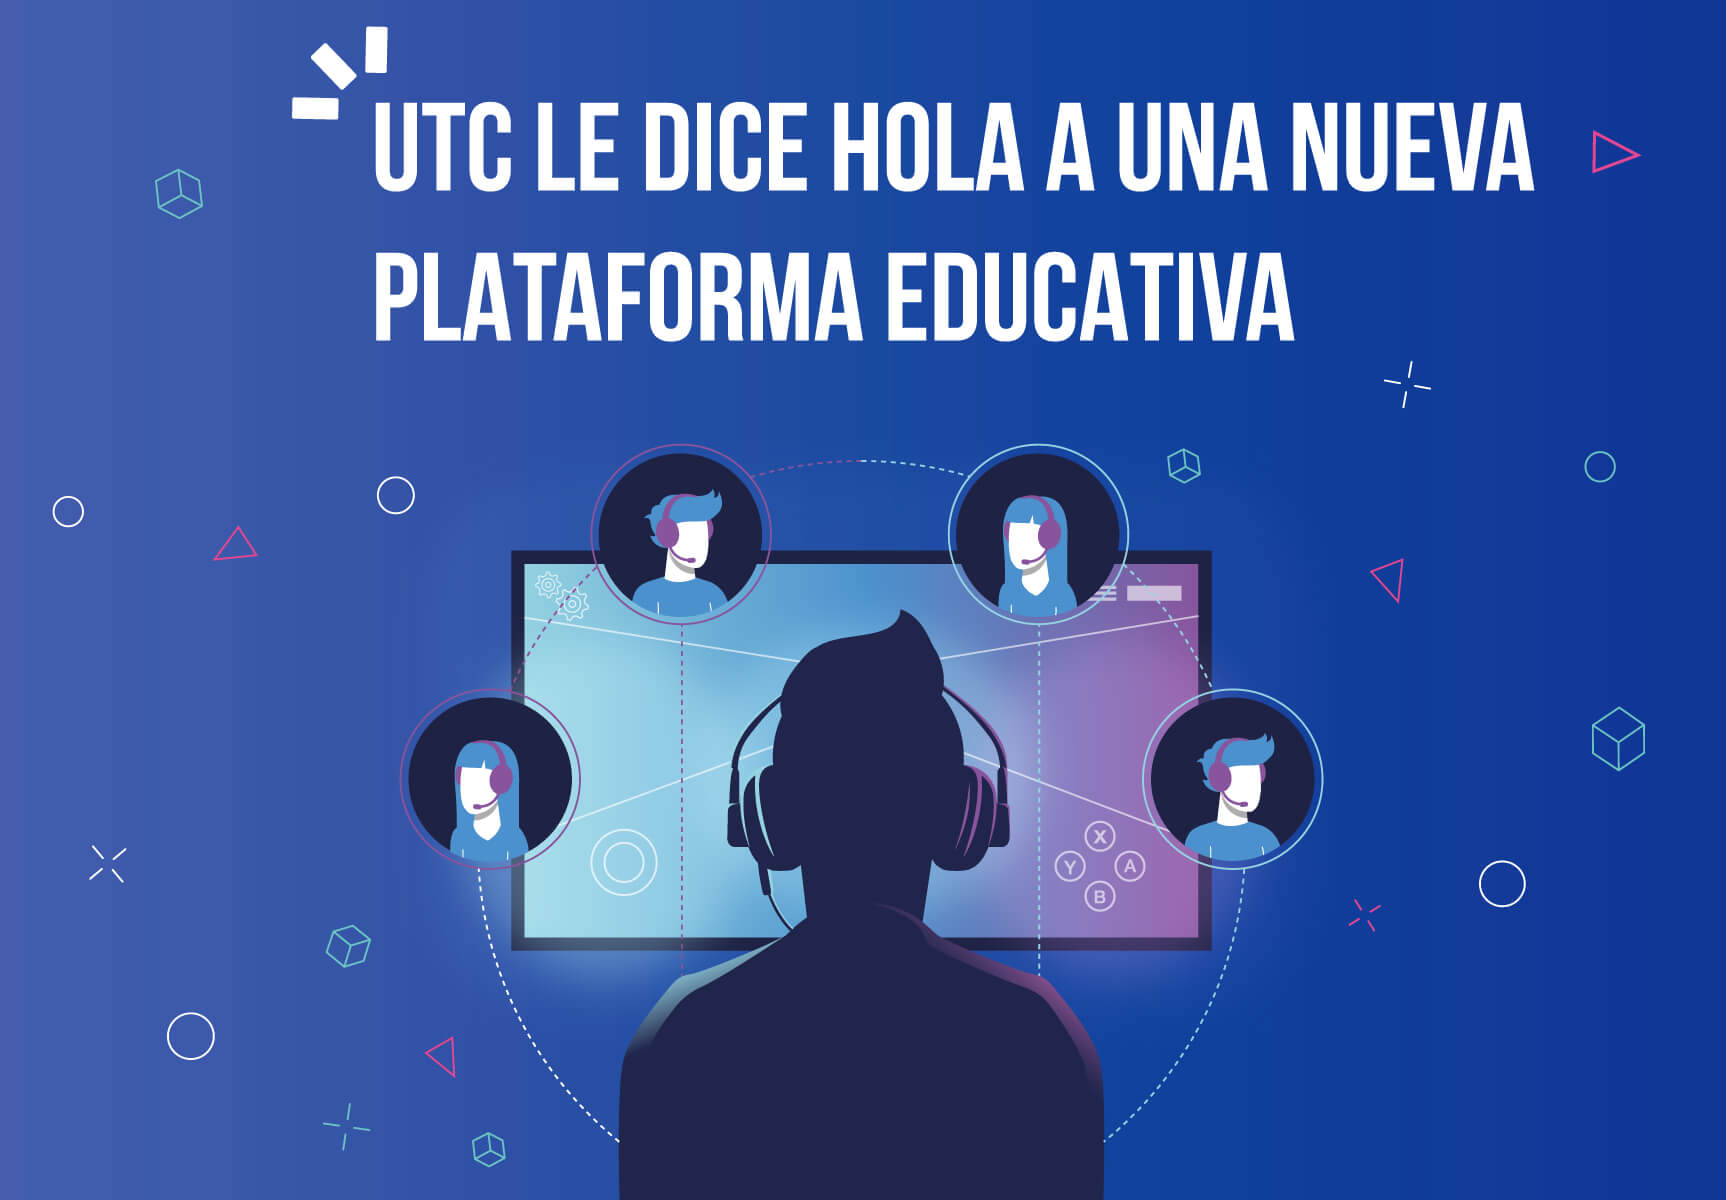 UTC le dice hola a una nueva plataforma educativa